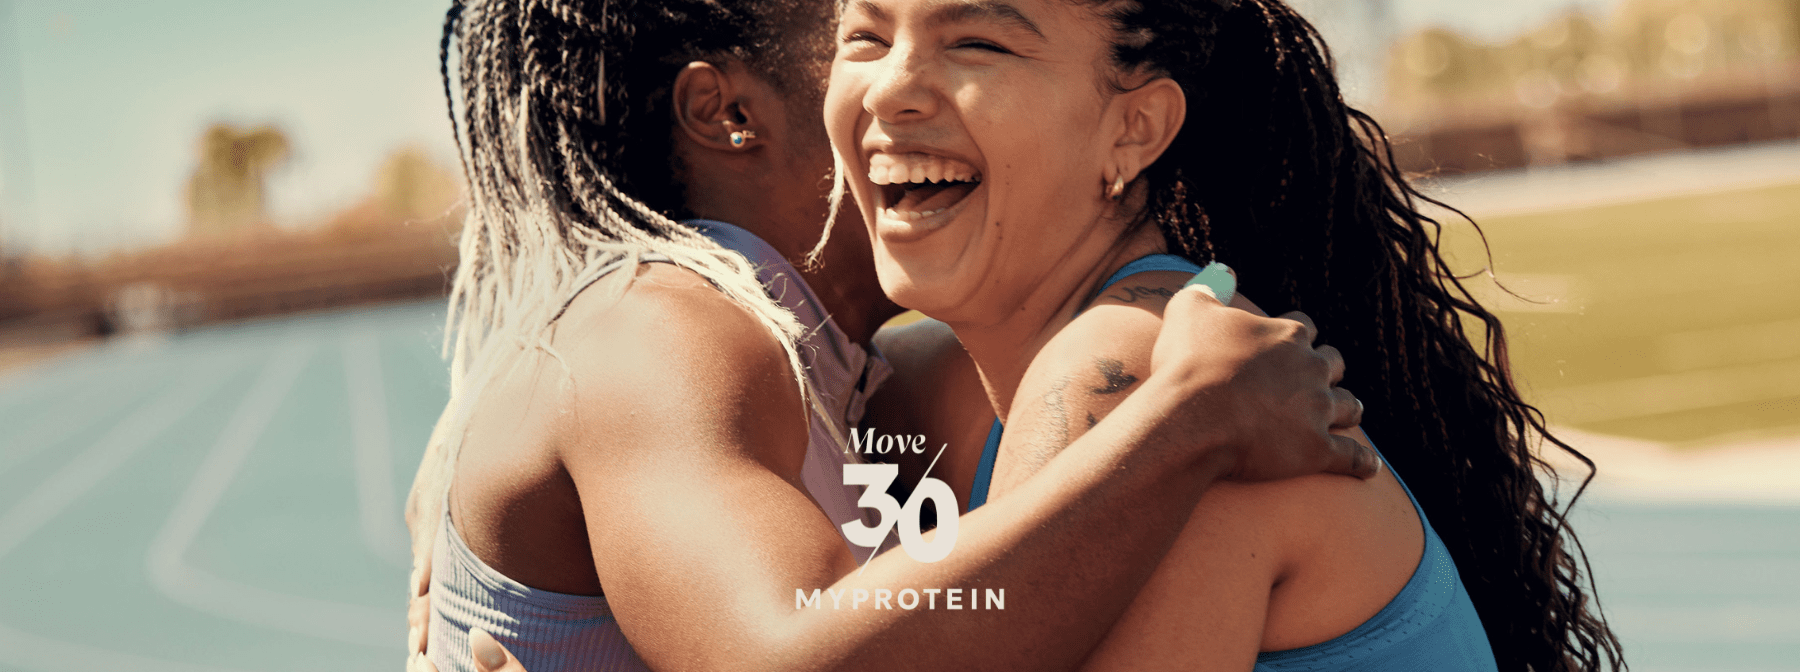 #Move30 | 30 días, 30 formas de moverse